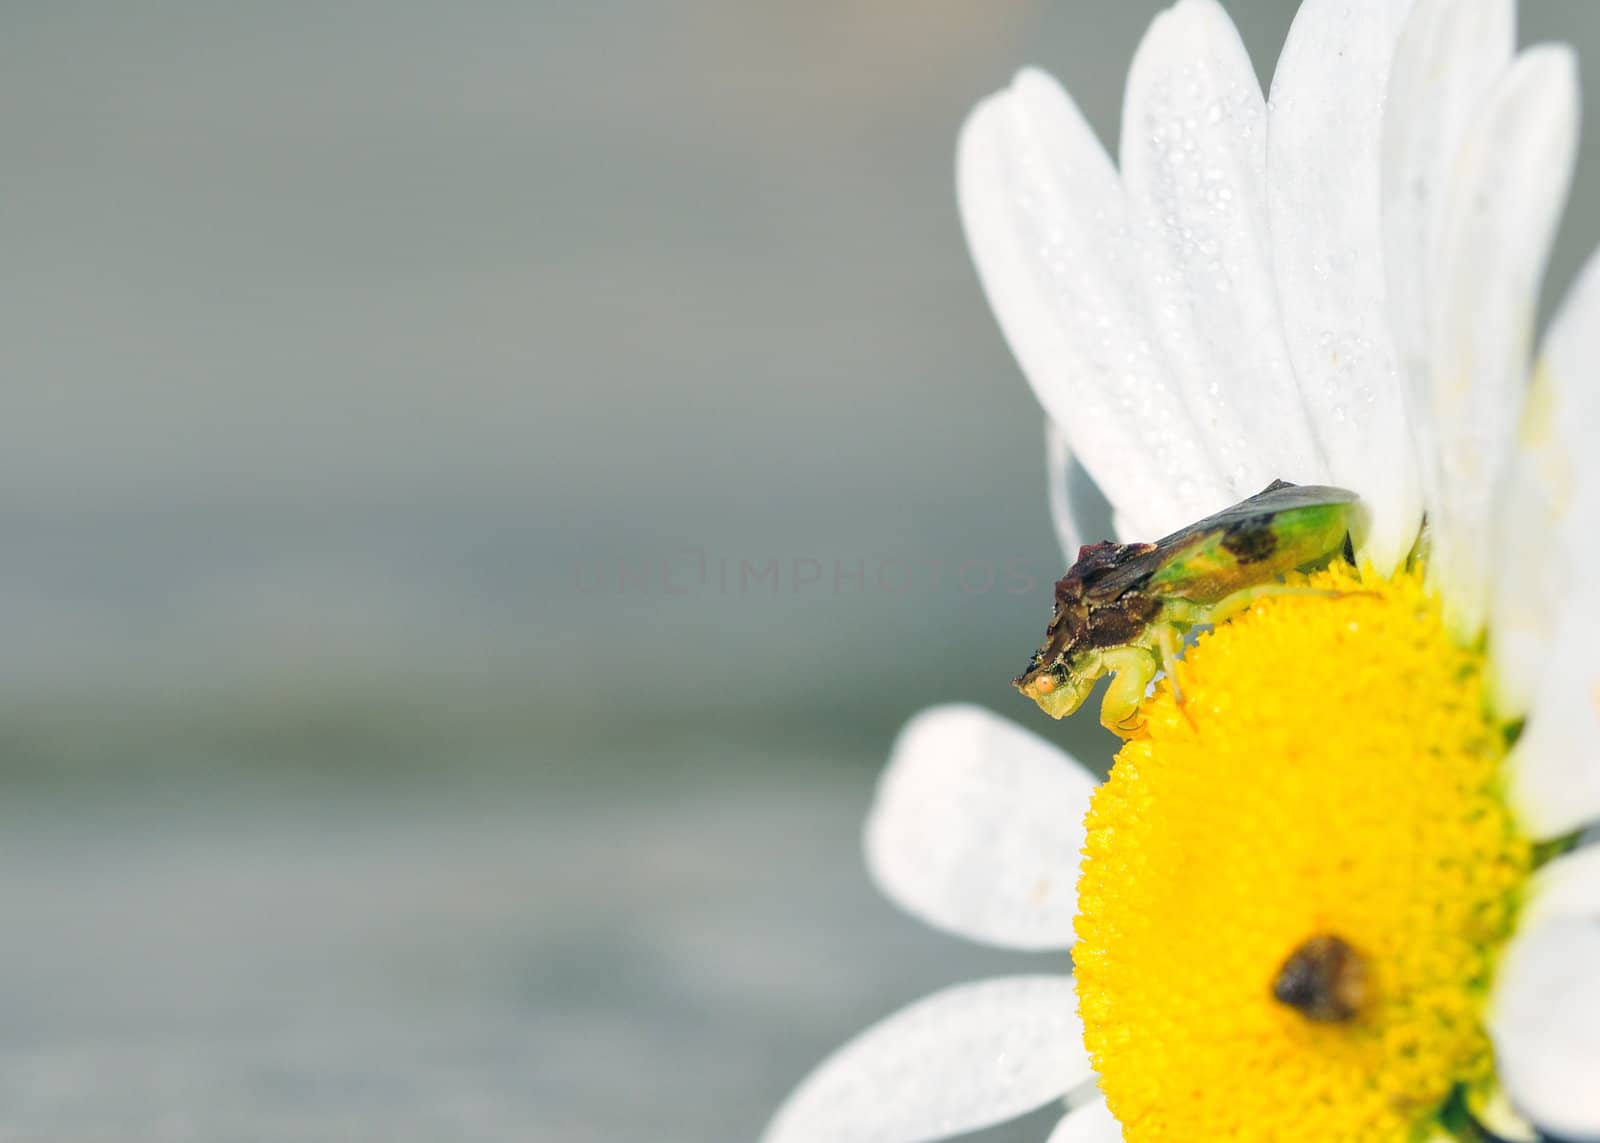 An Ambush Bug perched on a flower waiting on prey.